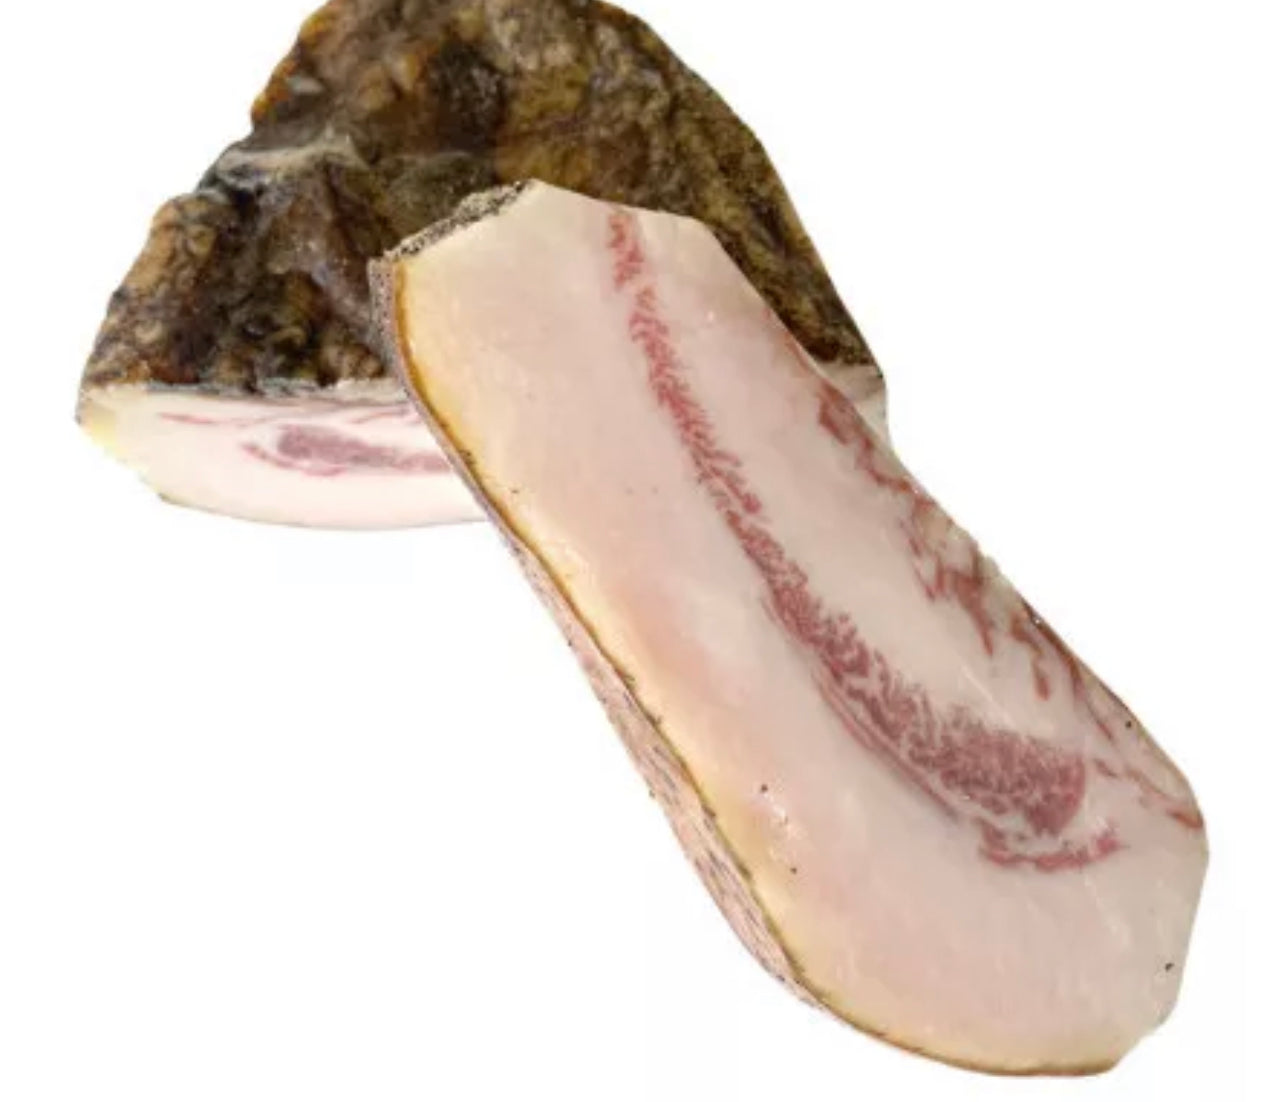 Dried throat of Noir de Bigorre AOP pork ±1.5kg